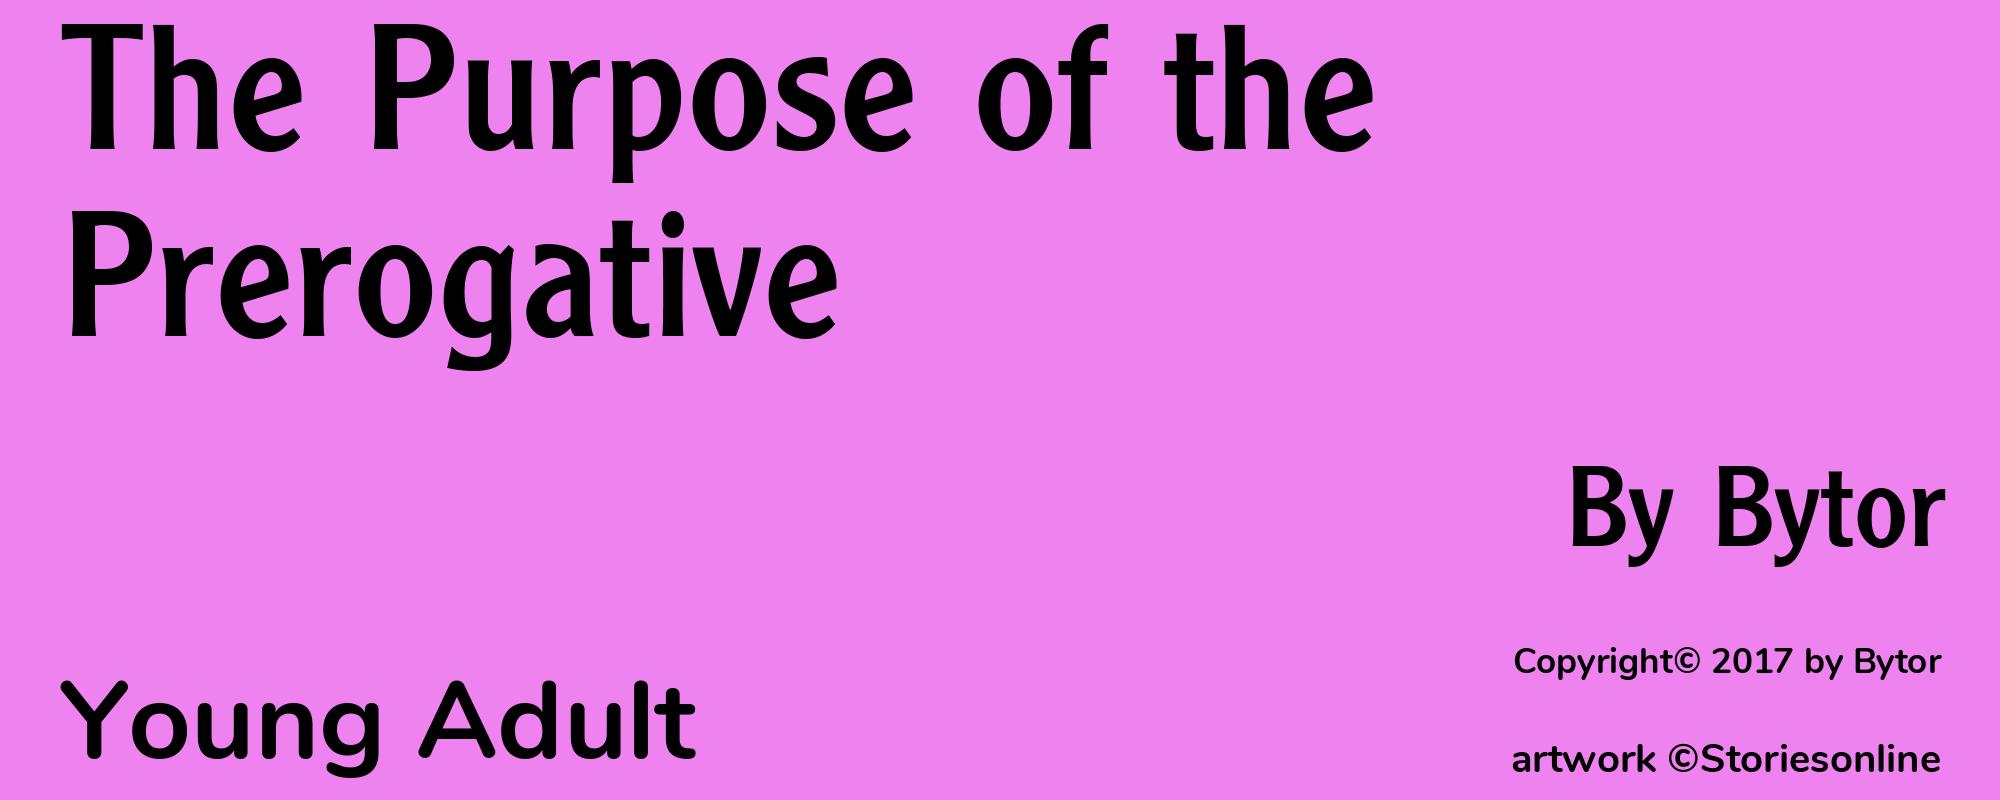 The Purpose of the Prerogative - Cover